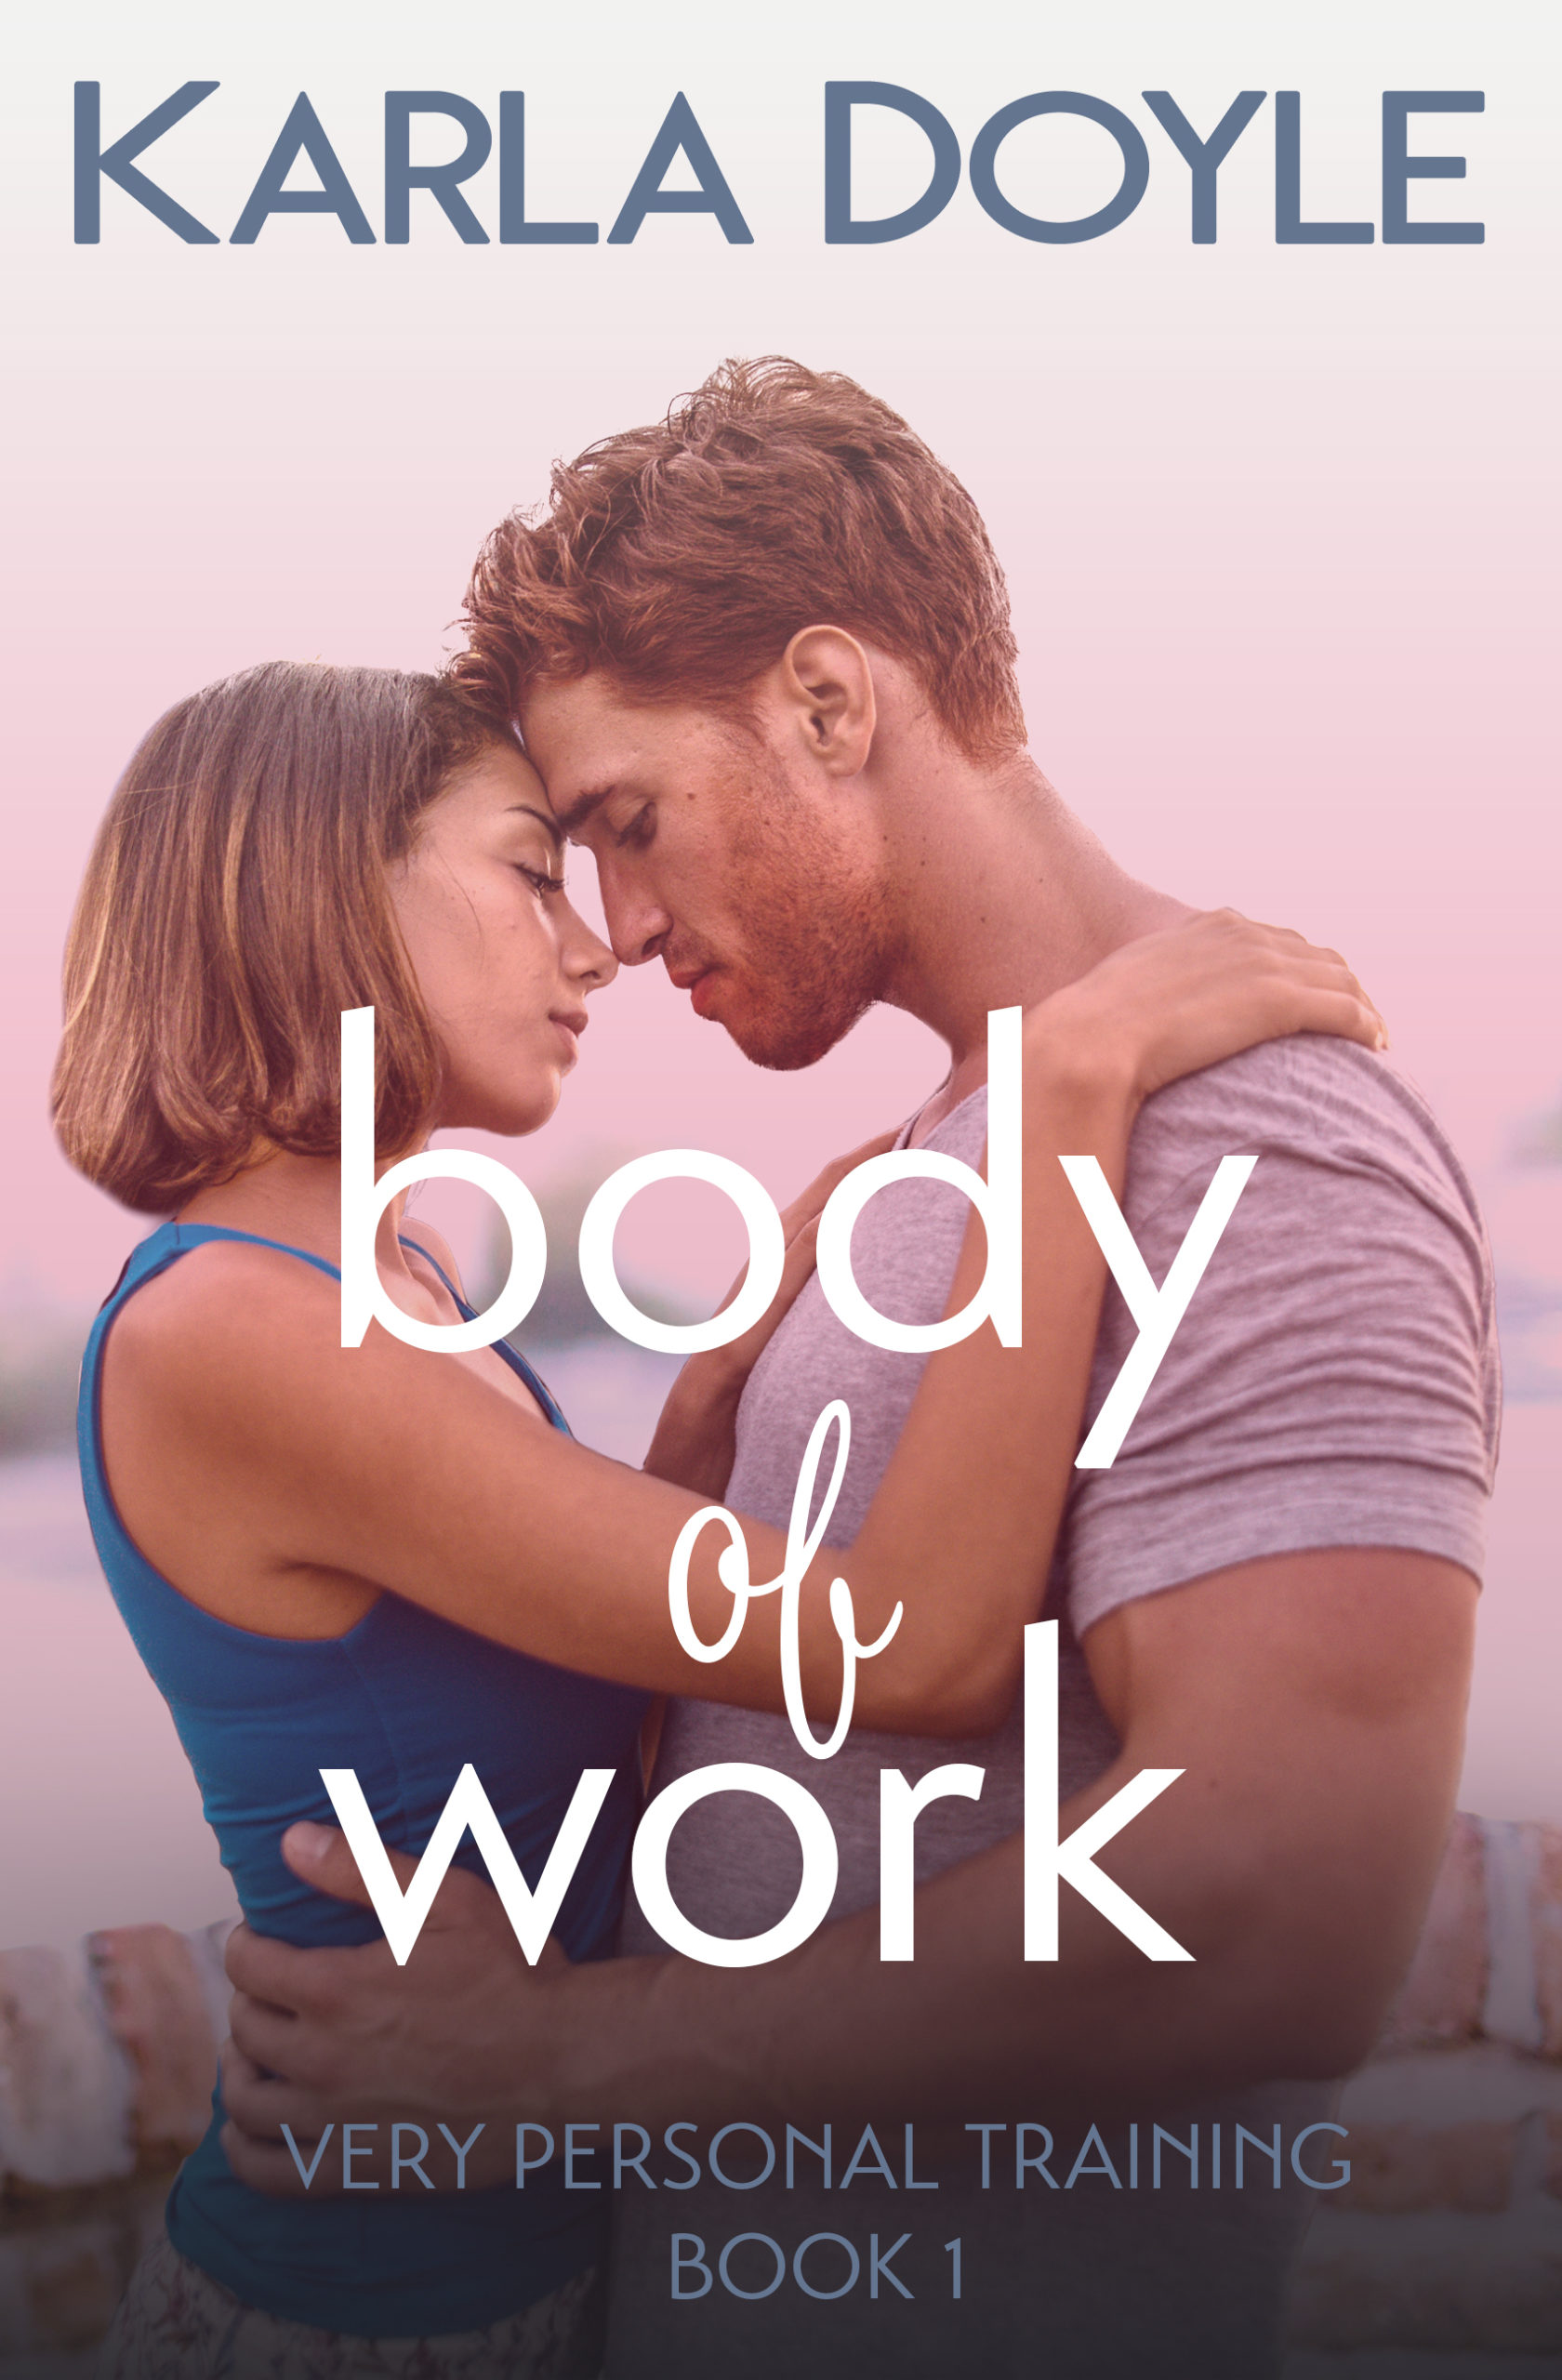 Body of Work by Karla Doyle